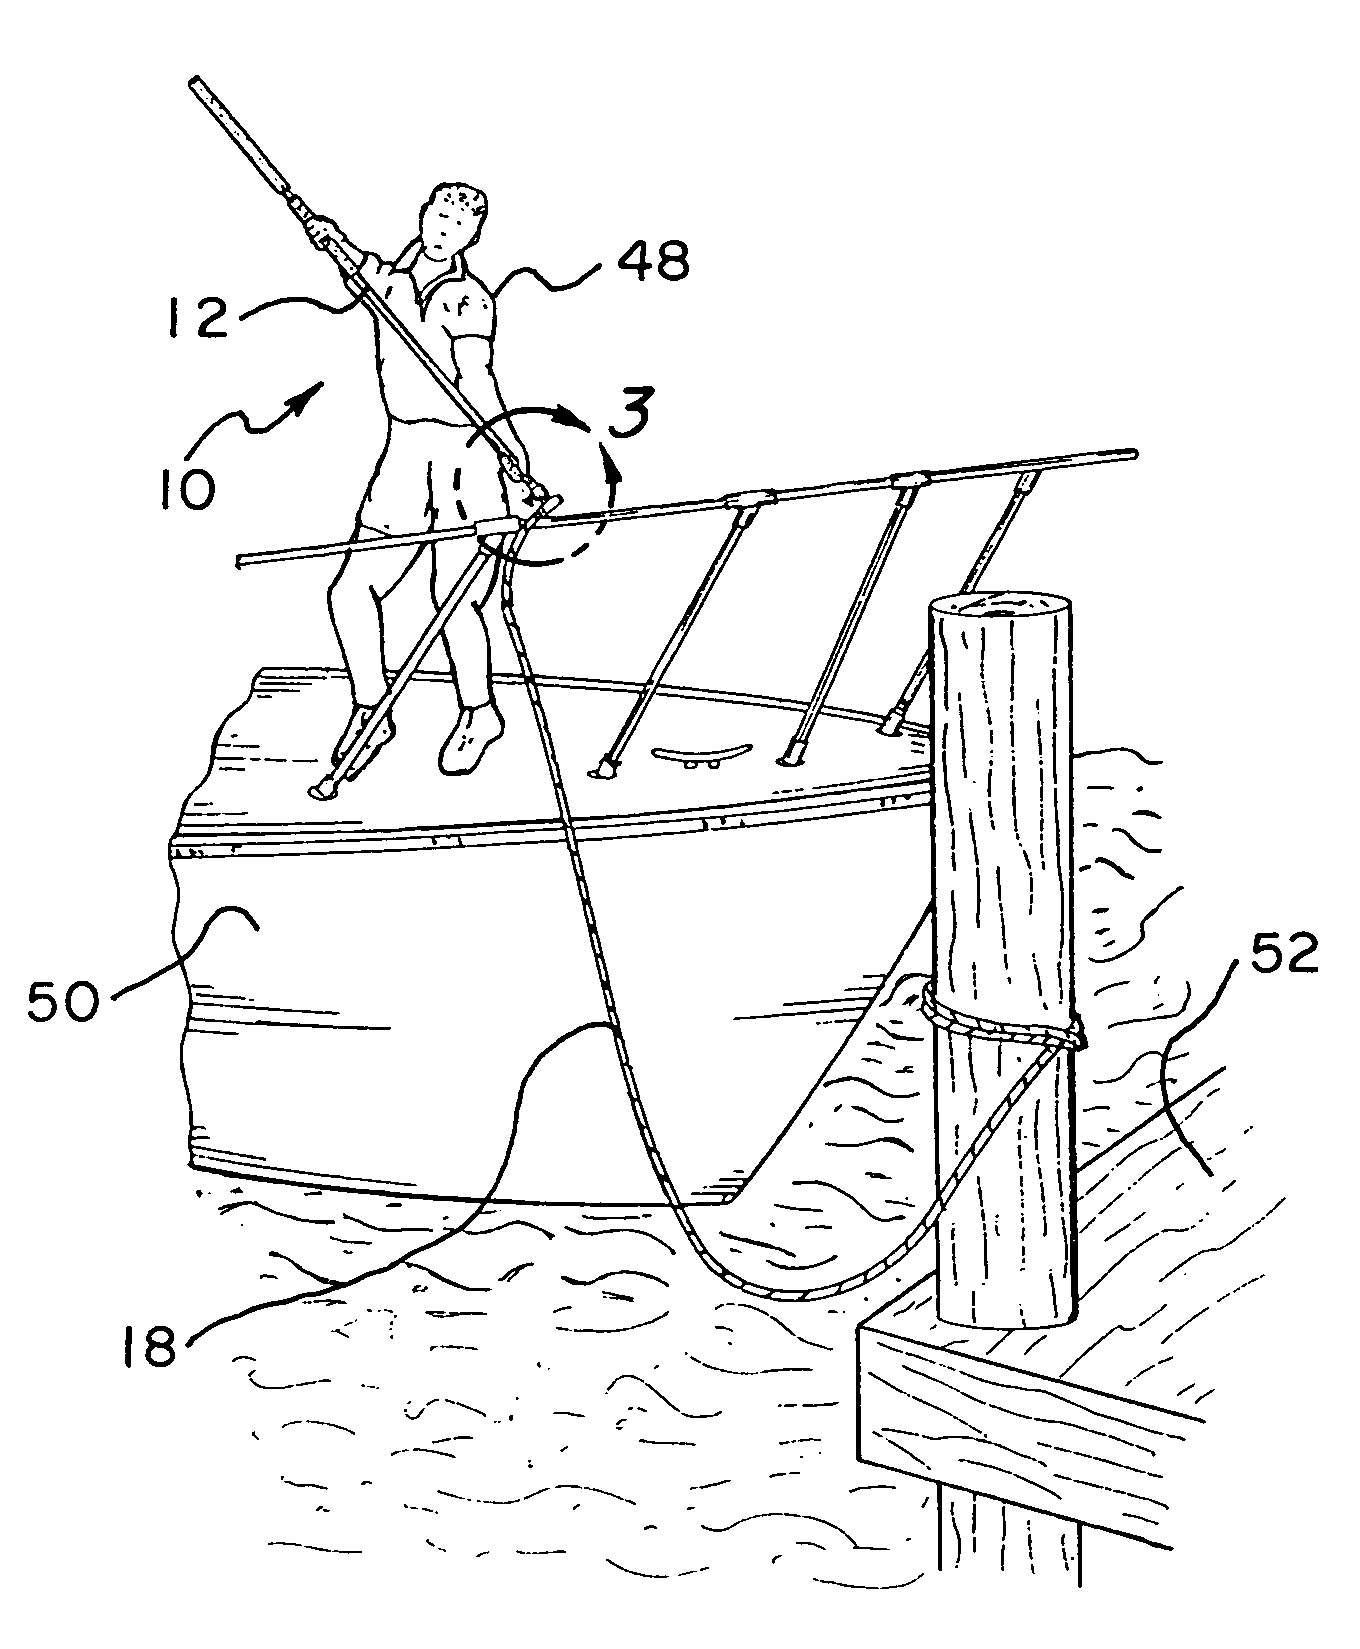 Magnetic boat docking system